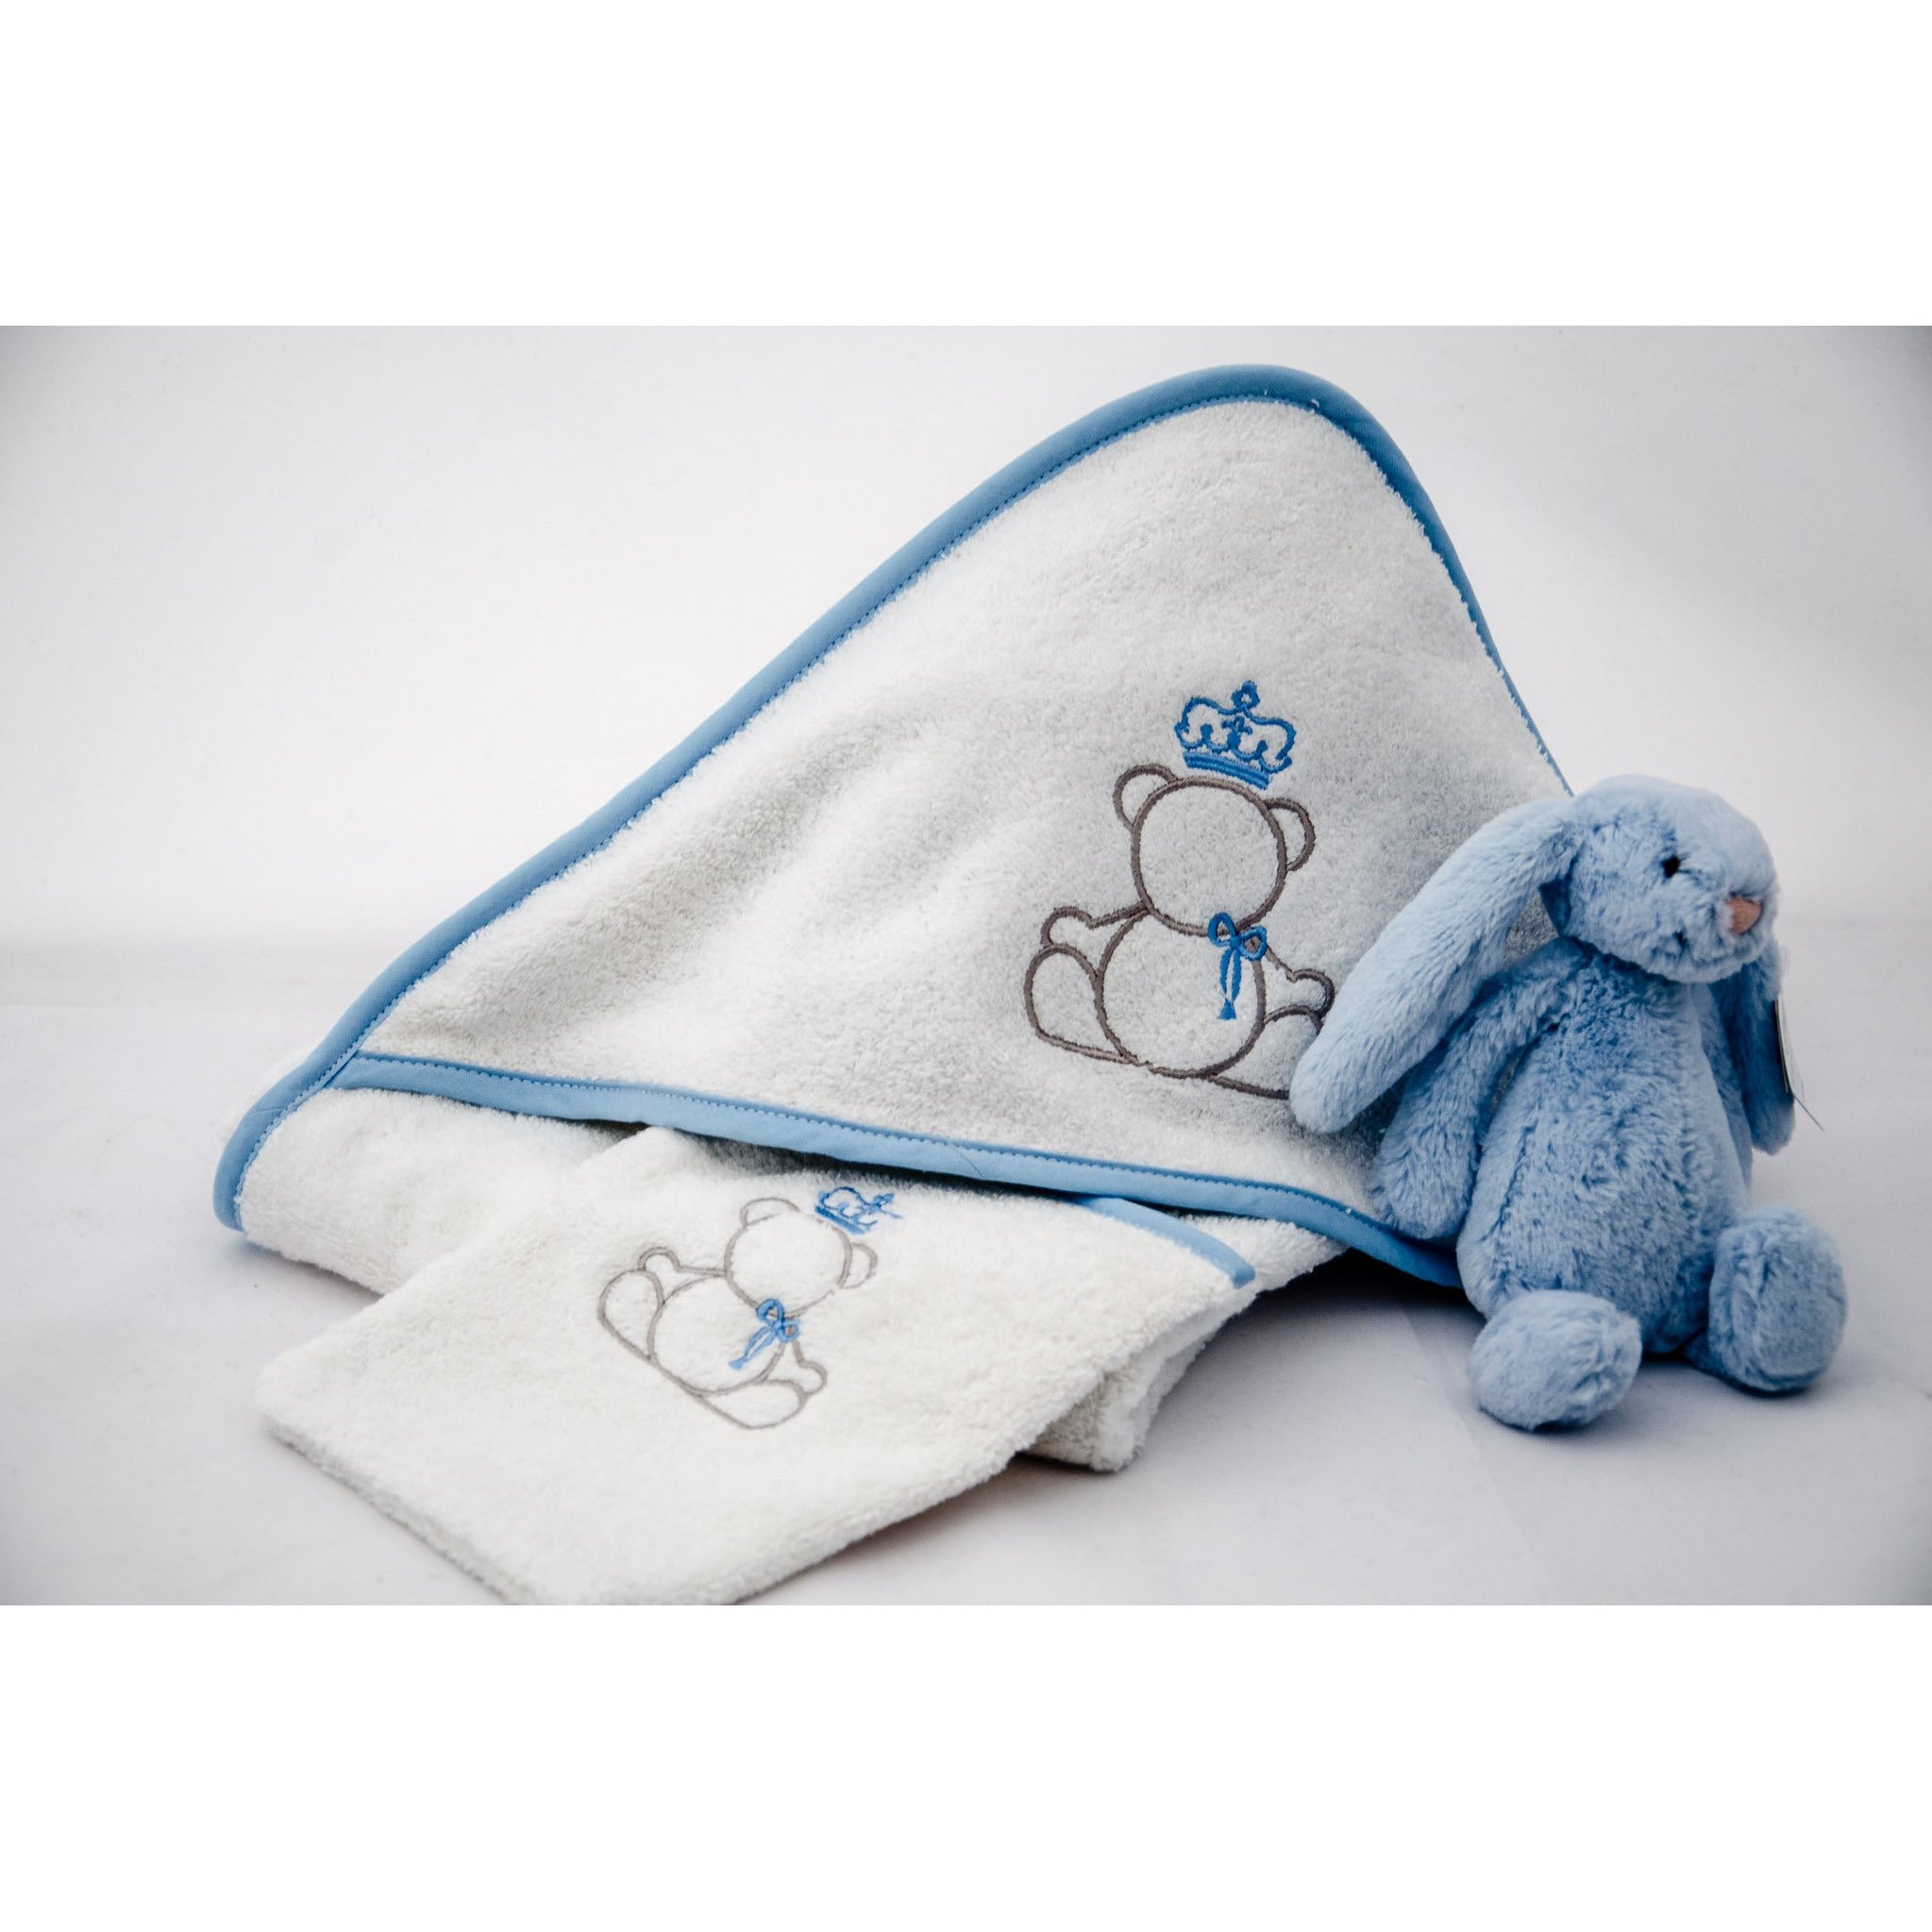 Linge de bain à capuche pour bébé en coton peigné avec ourson Teddy brodé